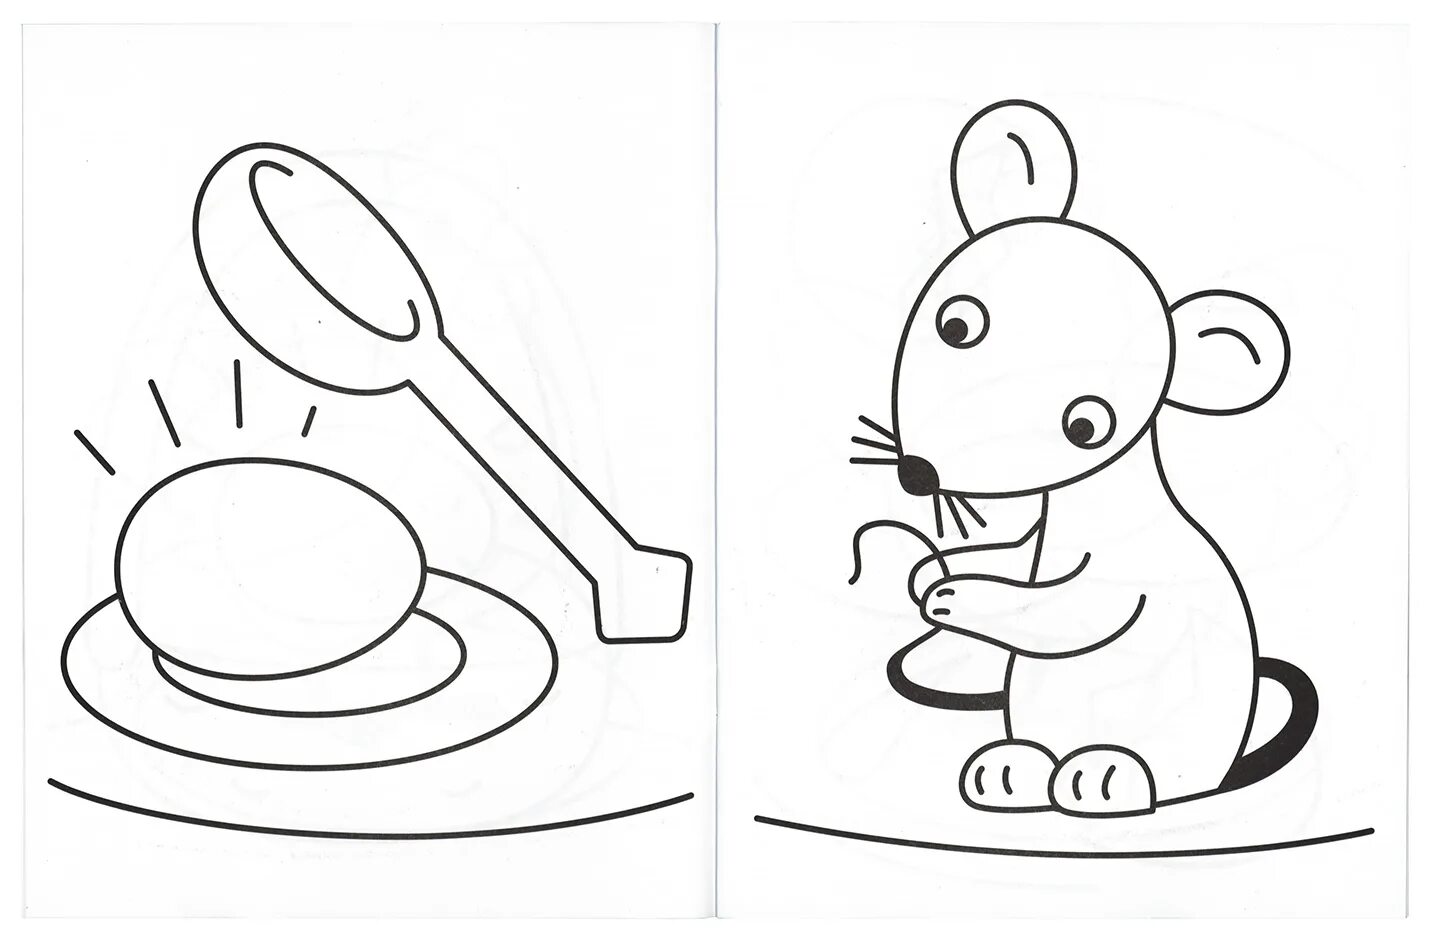 Фантастическая раскраска мышь для детей 2-3 лет